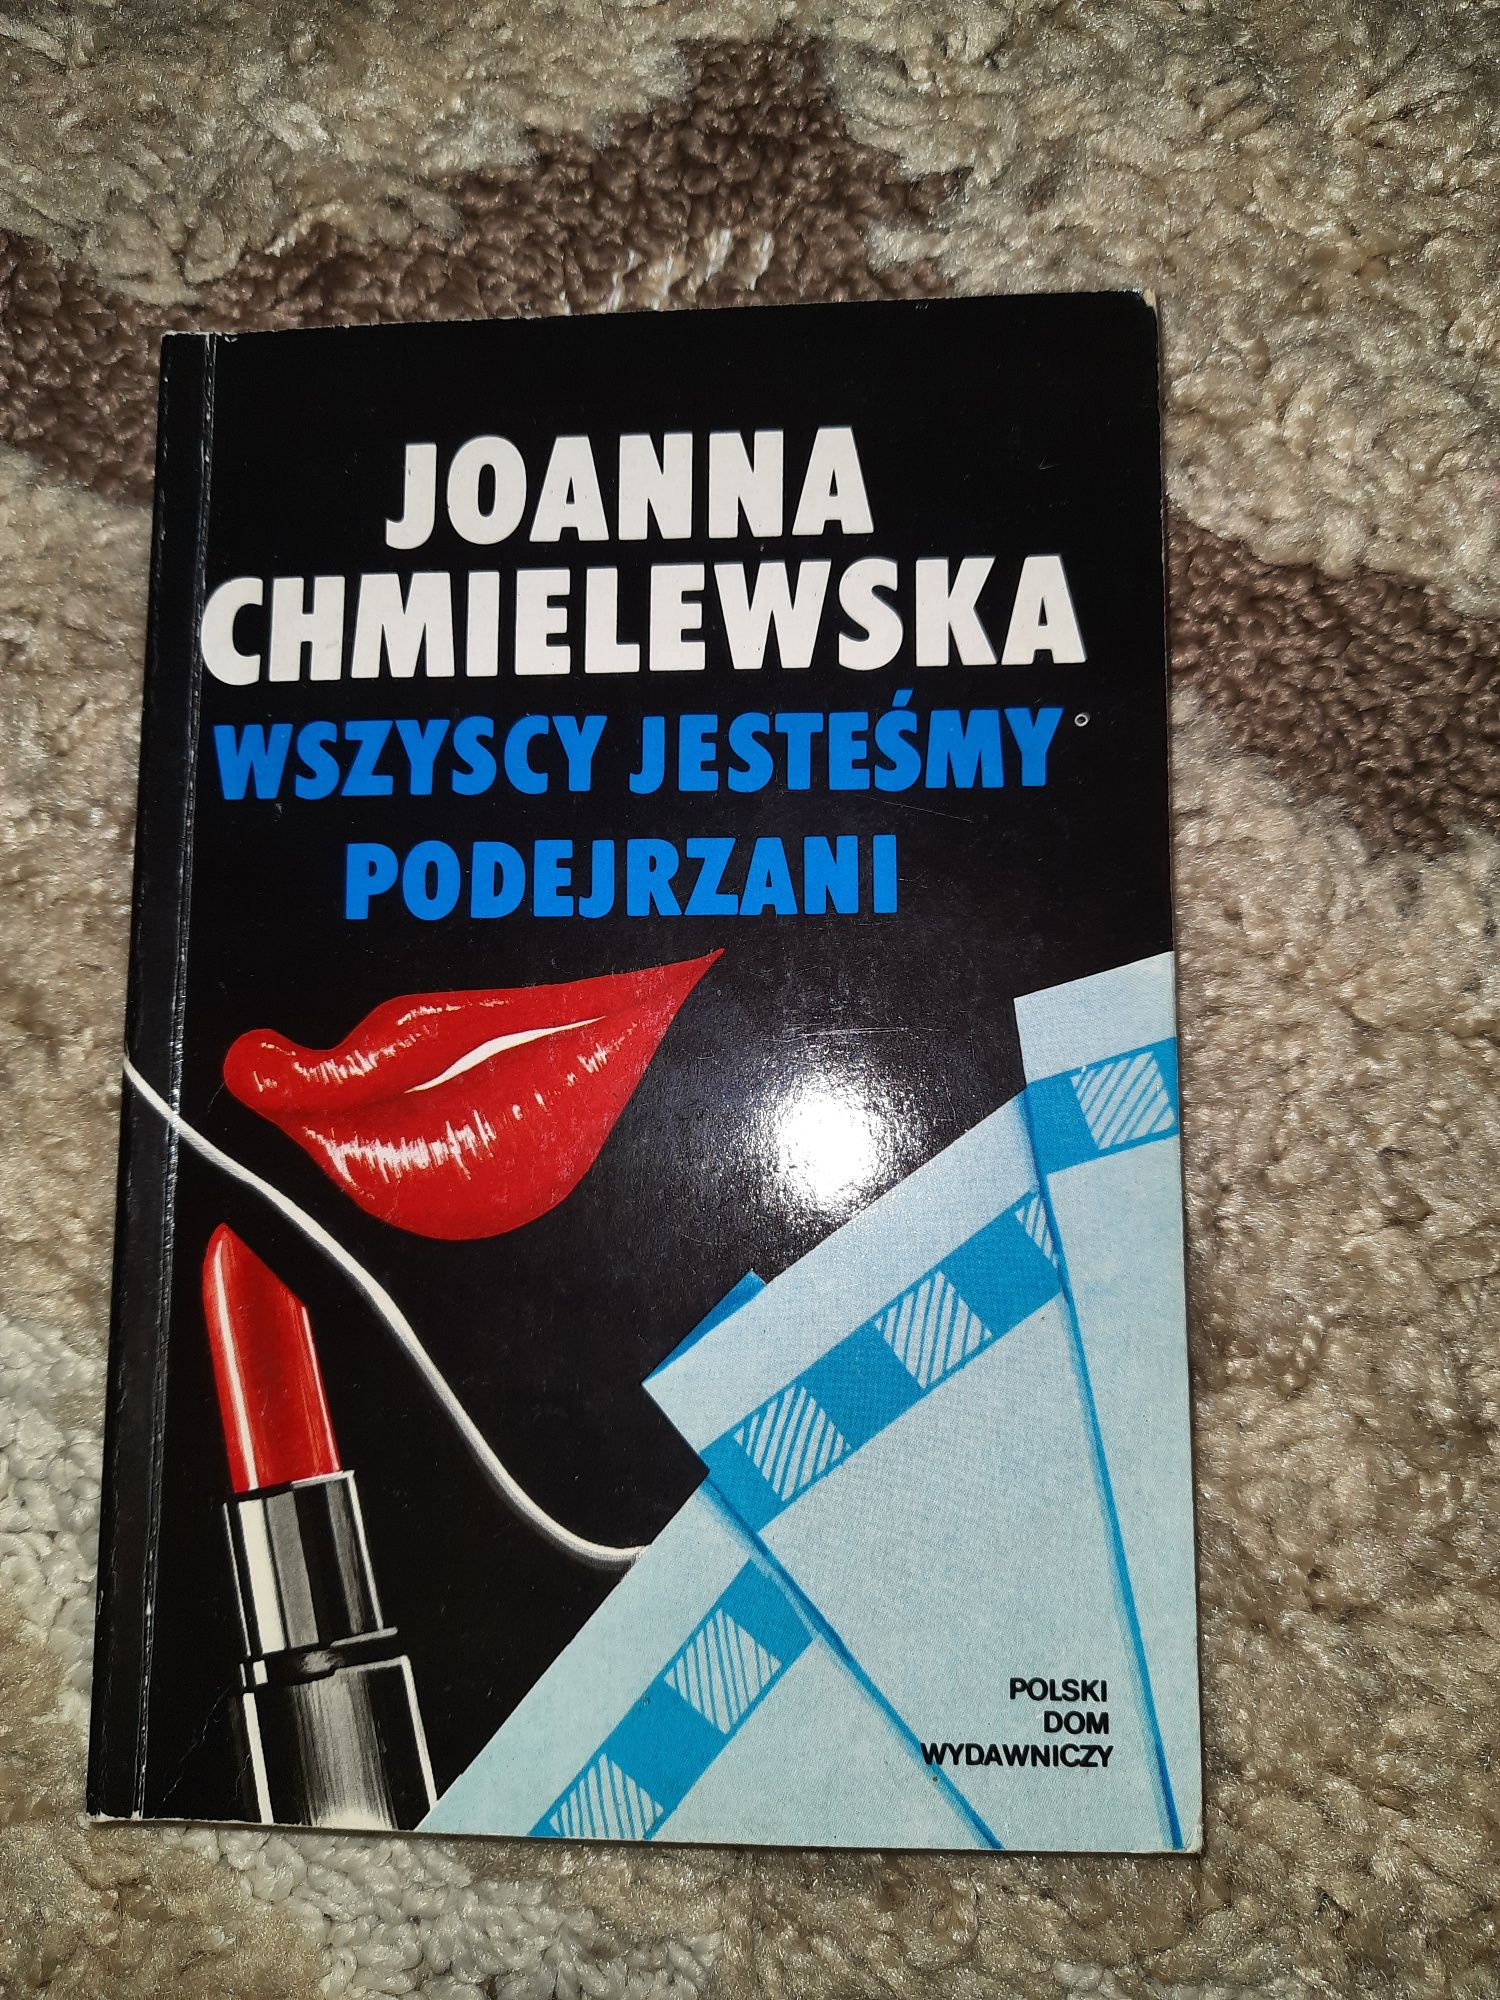 Joanna Chmielewska "Wszyscy jesteśmy podejrzani"